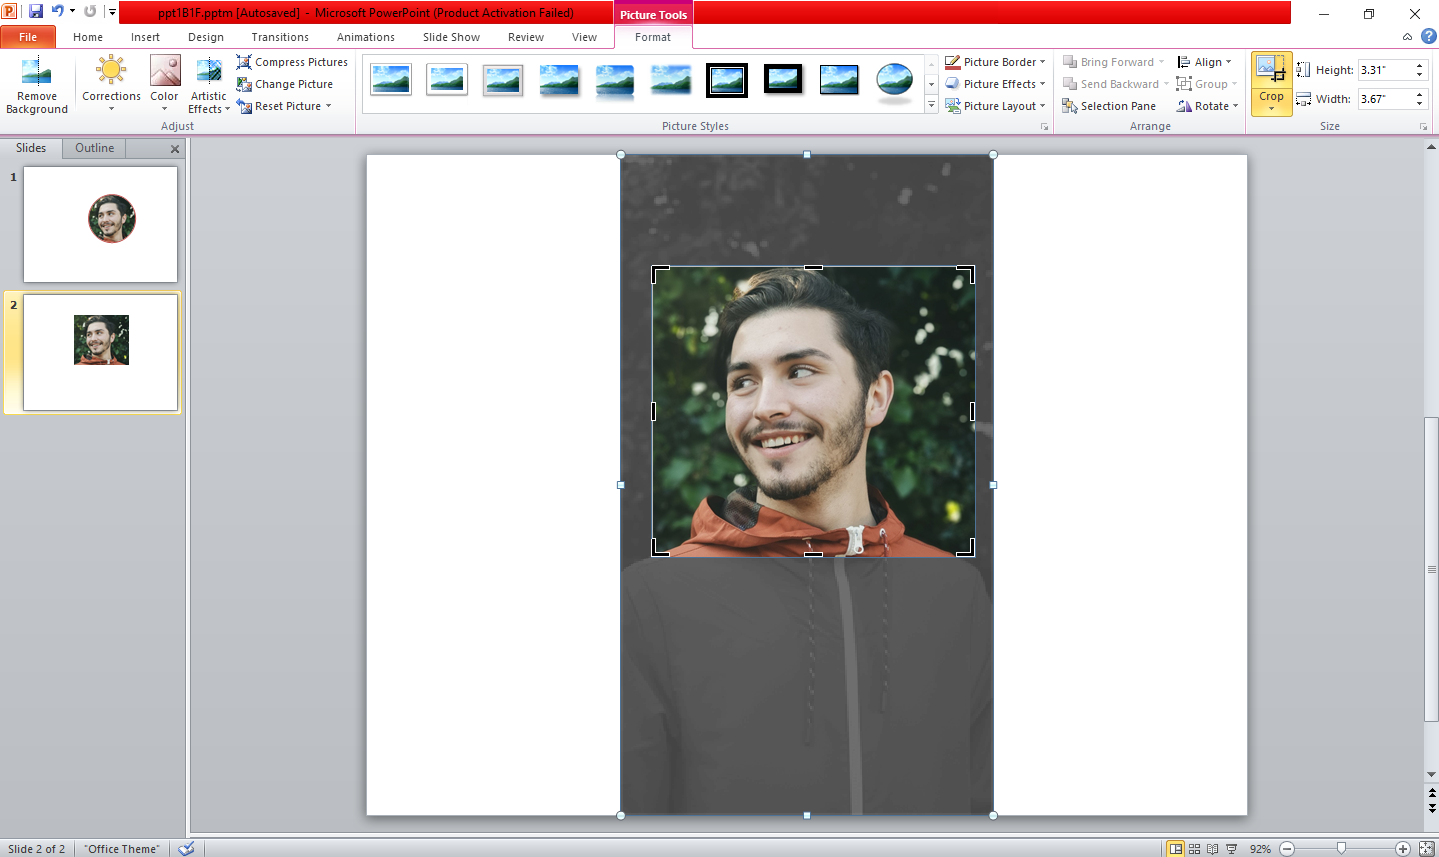 Manual Cropping The Image in PowerPoint - Come ritagliare un’immagine in un cerchio perfetto in PowerPoint